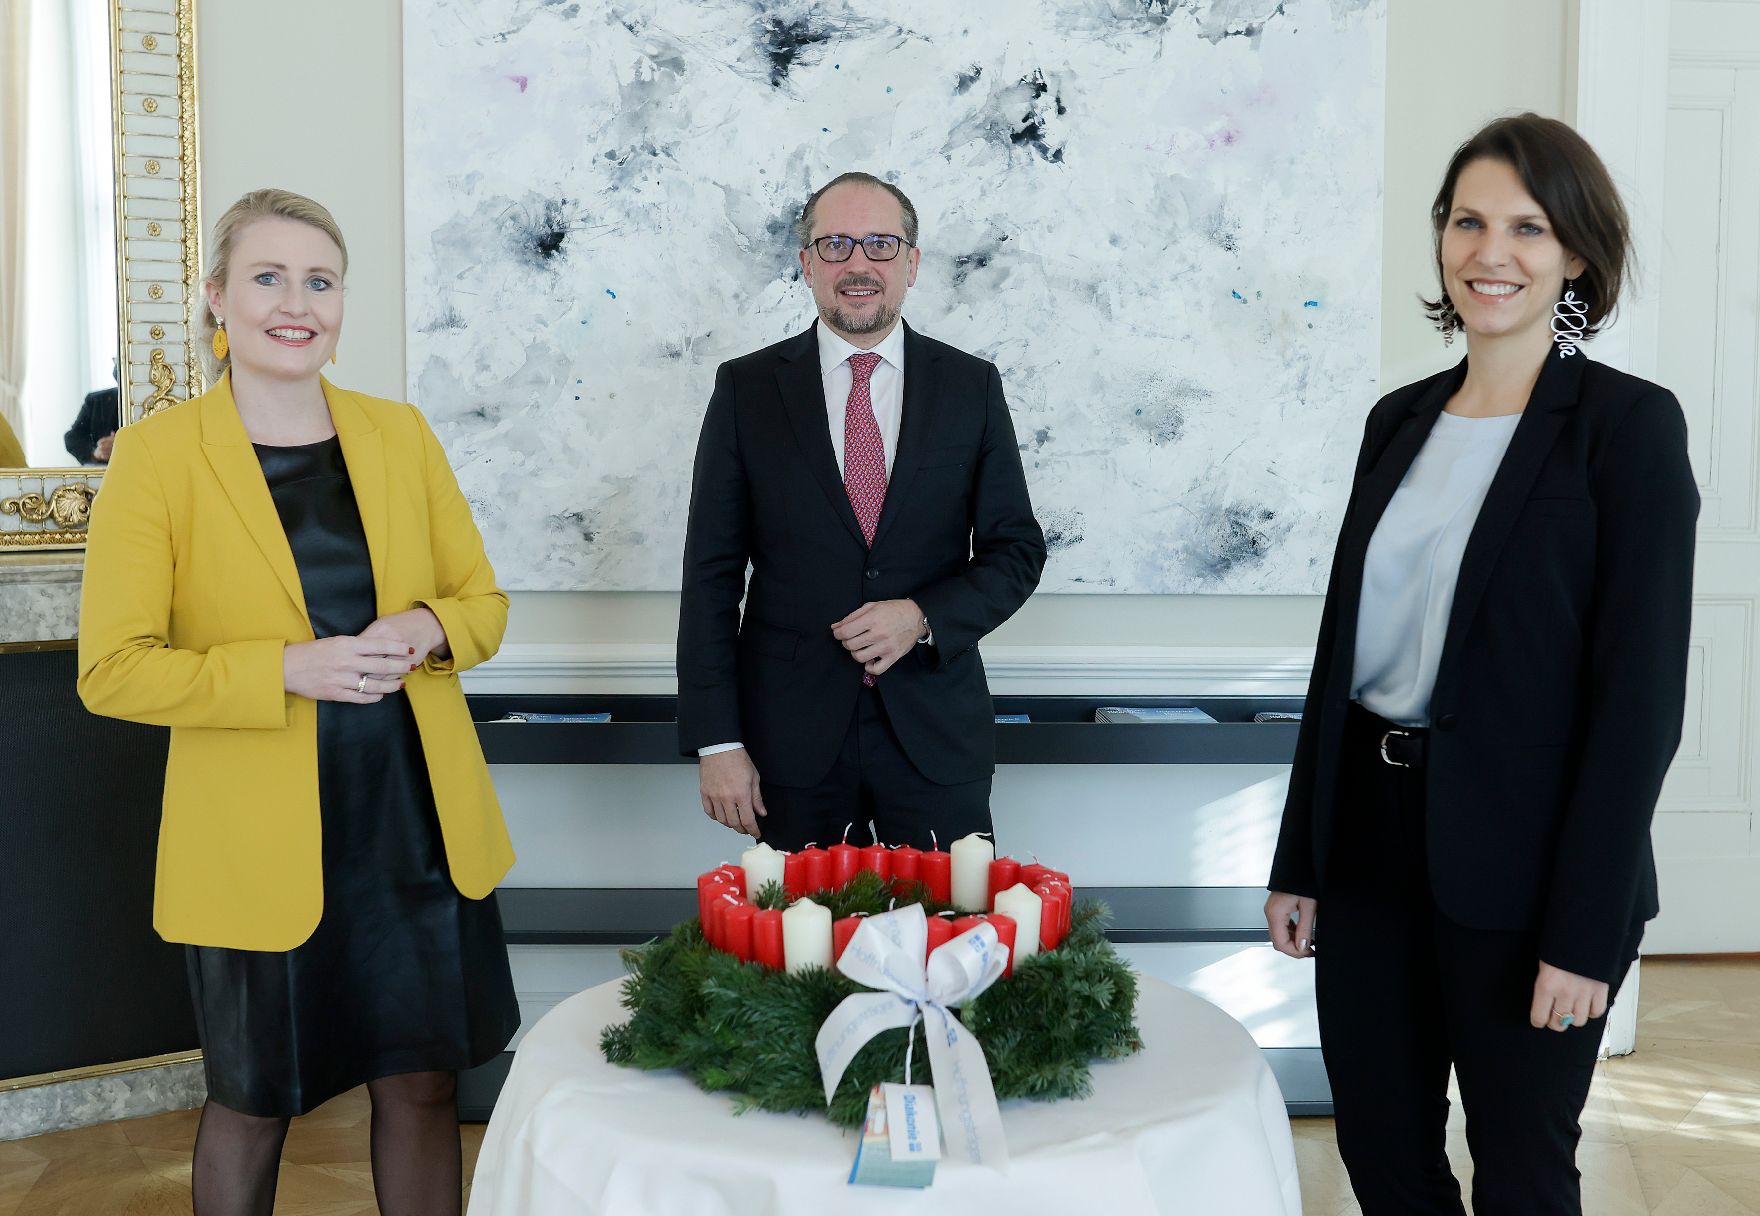 Am 25. November 2021 wurde Bundeskanzler Alexander Schallenberg, BundesministerinKaroline Edtstadler und Bundesministerin Susanne Raab von der Diakonie Österreich ein Adventkranz überreicht.